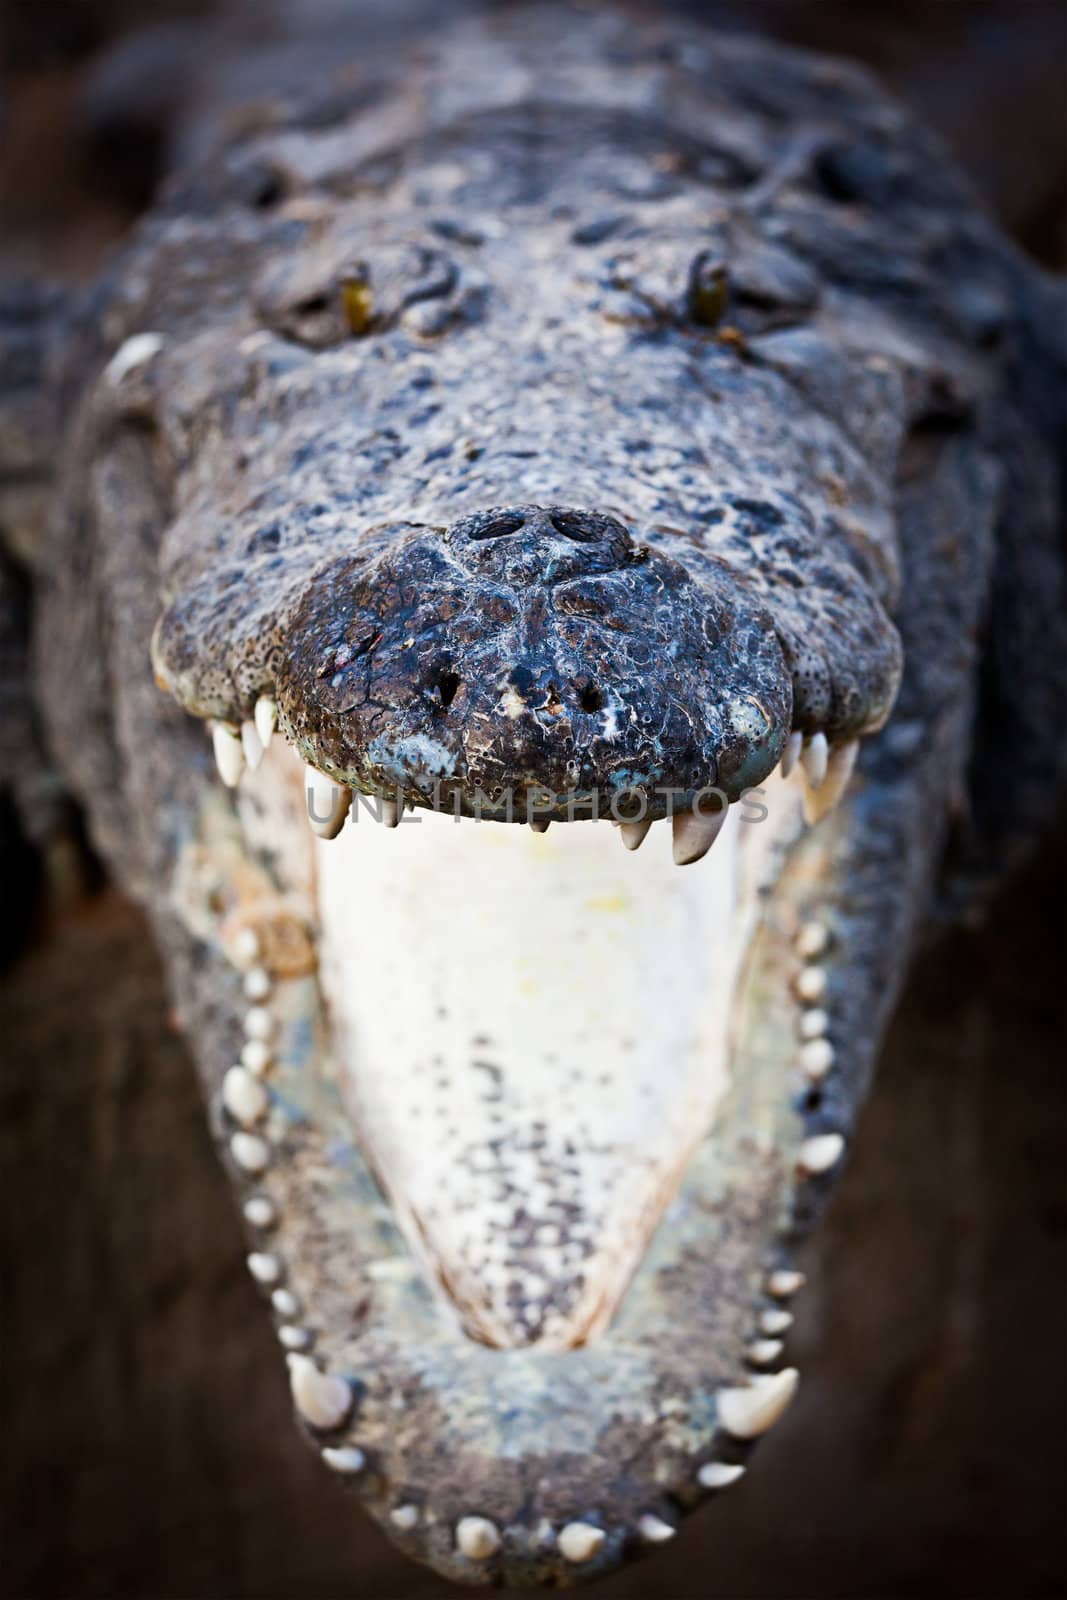 Charging crocodile jaws